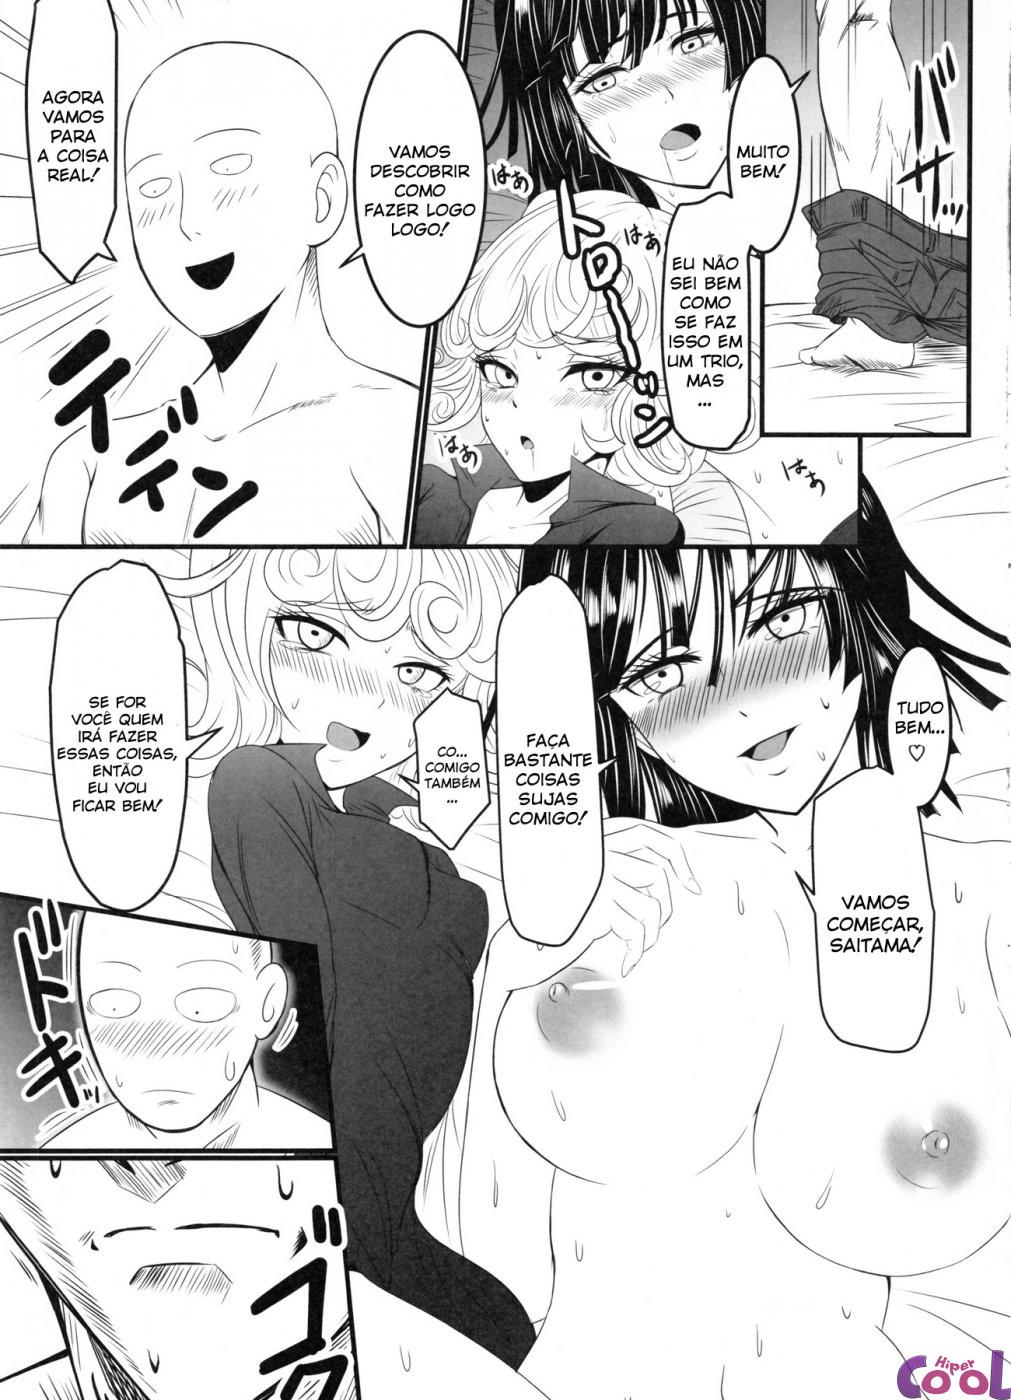 dekoboko-love-sister-2-gekime-chapter-01-page-14.jpg